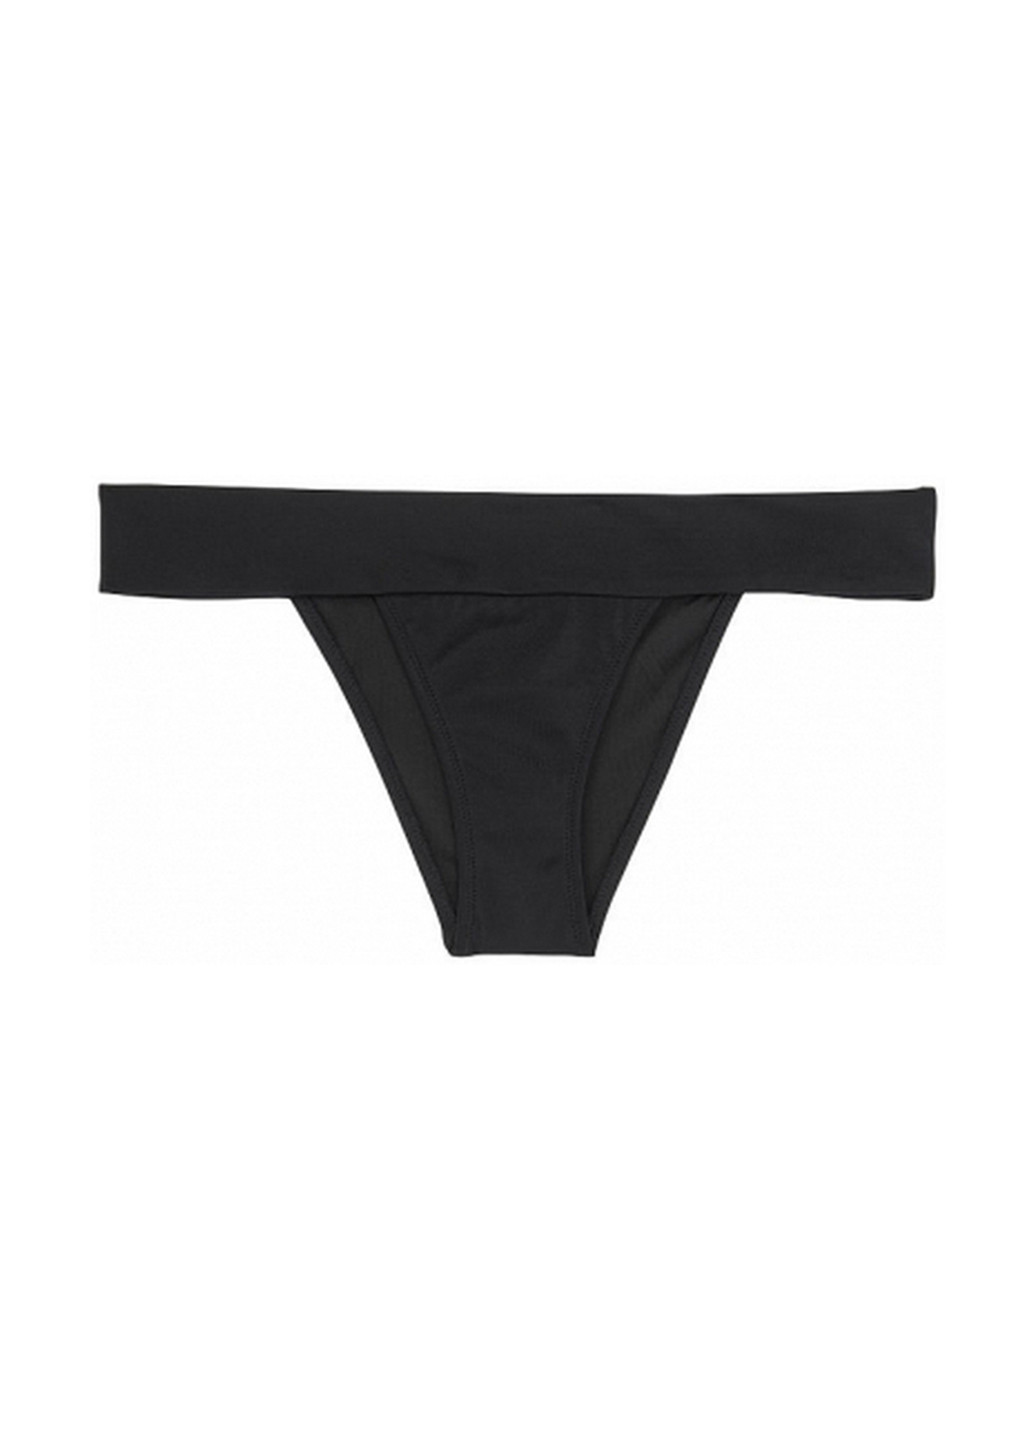 Чорний літній купальник (ліф, труси) бікіні, роздільний Victoria's Secret